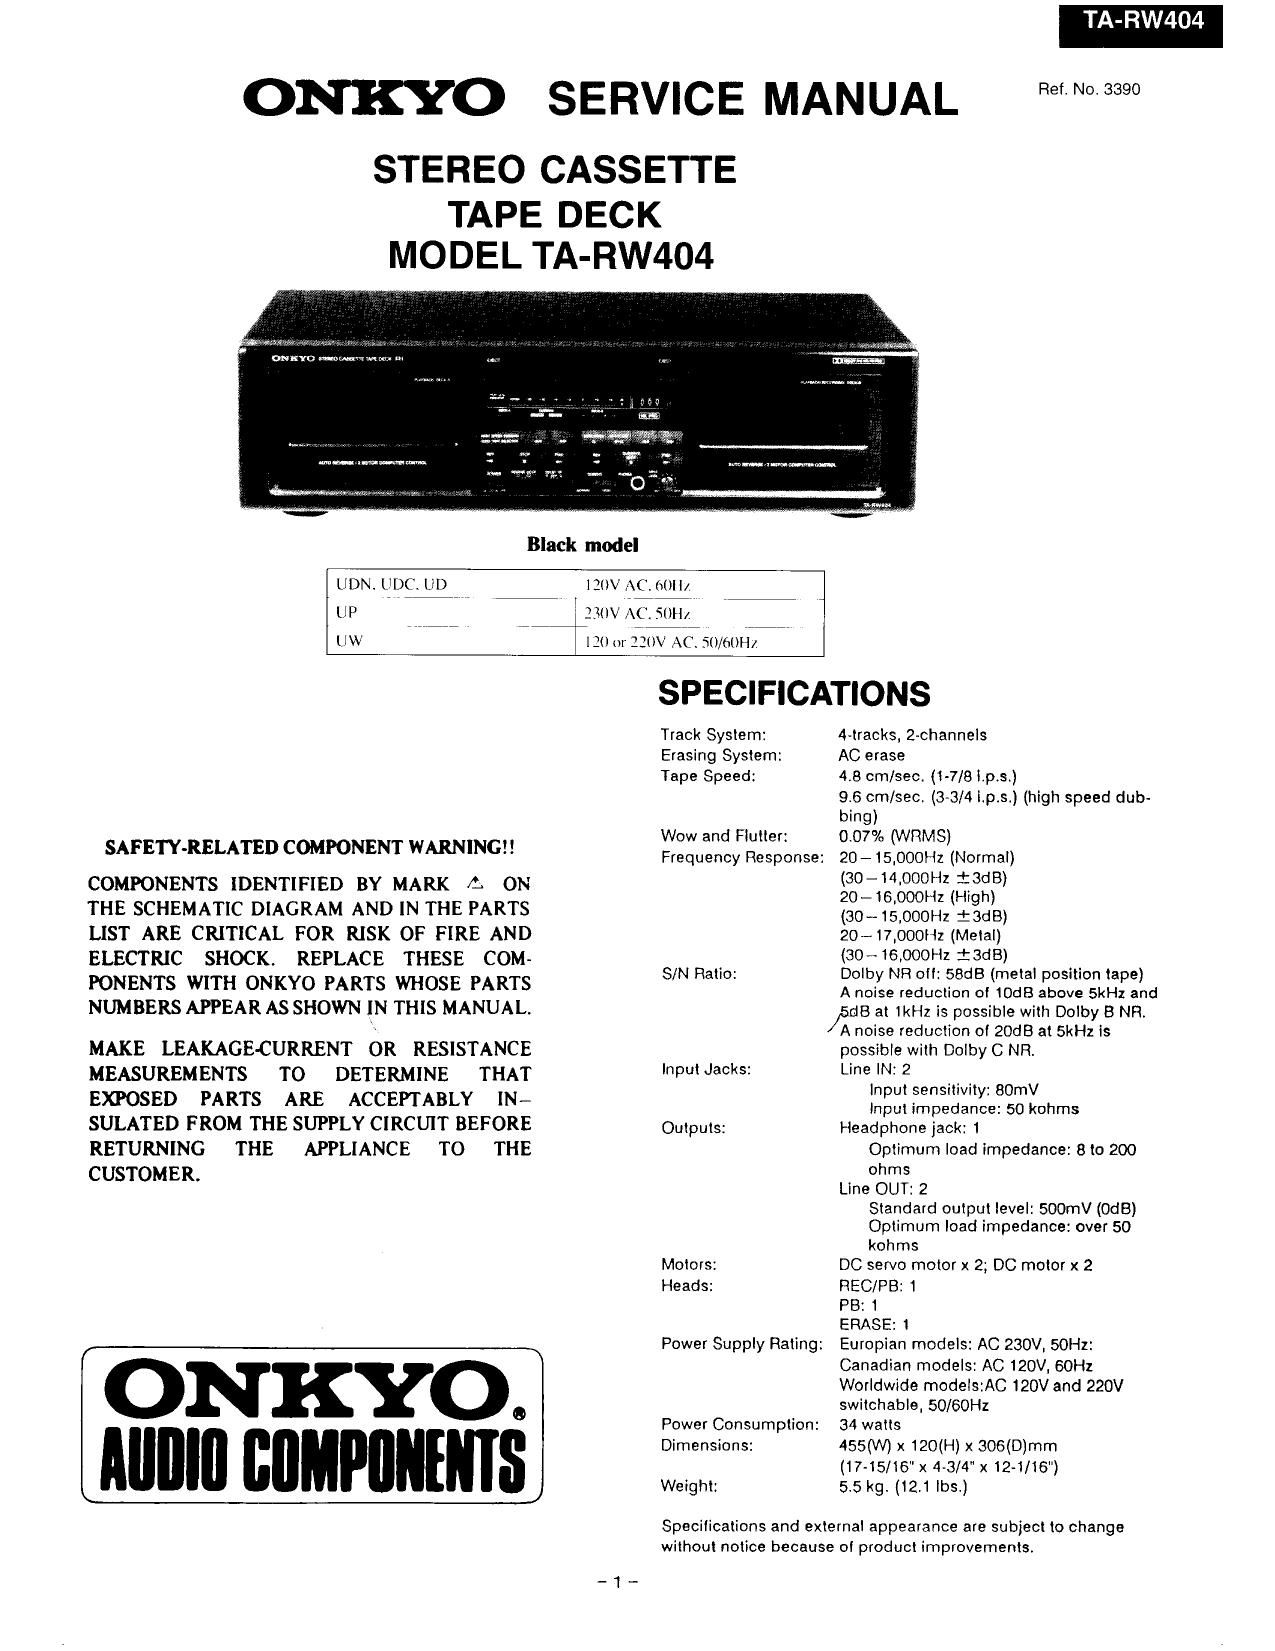 Onkyo TARW 404 Service Manual